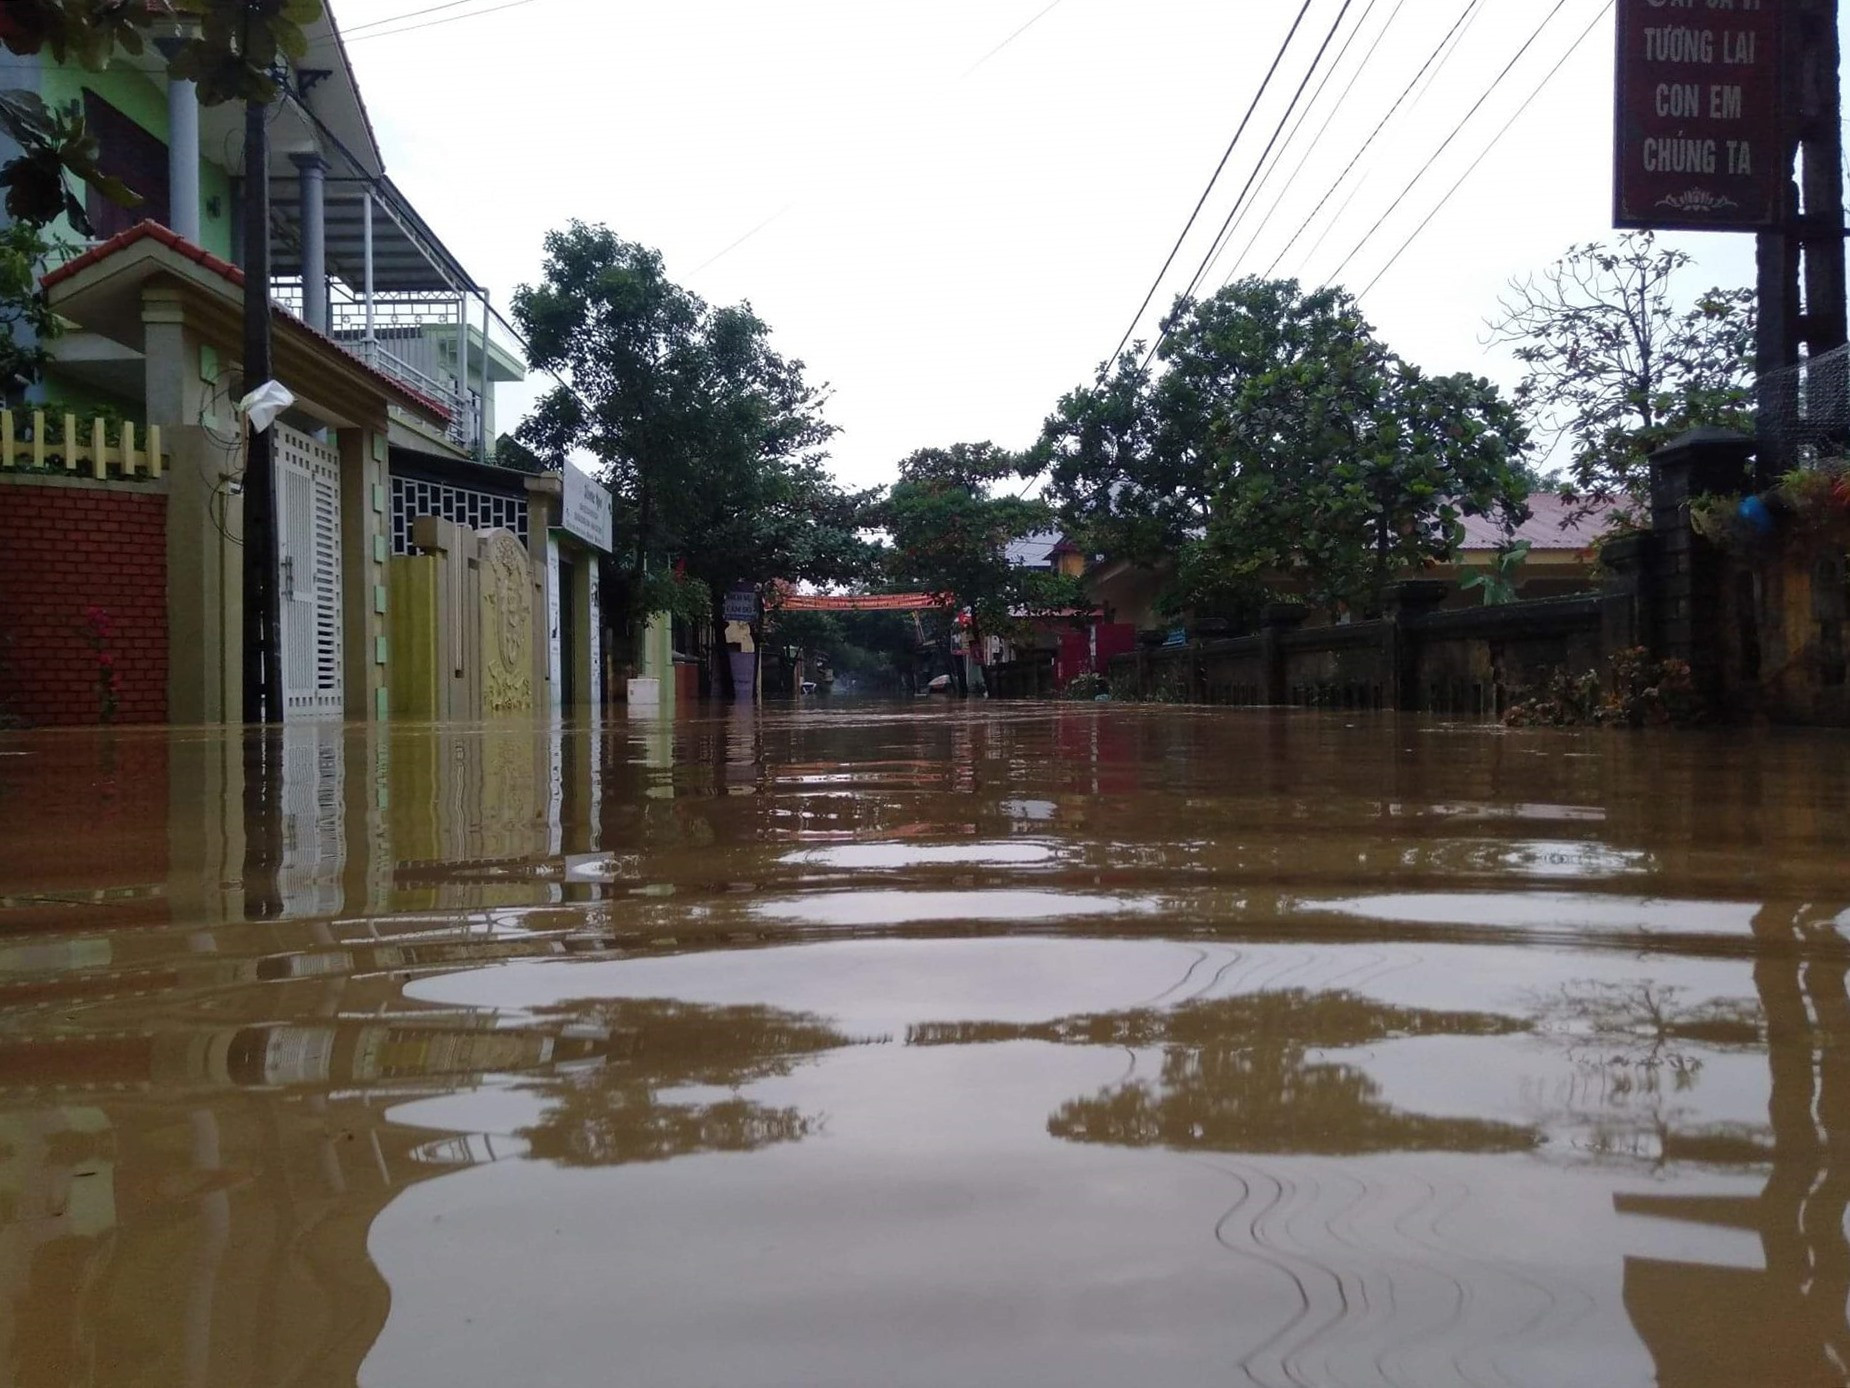 Sáng 16.10 Ban Chỉ huy PCTT-TKCN tỉnh Quảng Bình cho biết, theo thống kê, tại huyện Lệ Thủy có 256 hộ bị ngập trong nước lũ; huyện Quảng Ninh có 45 hộ; giao thông ngập, chia cắt tại 4 điểm; có 9 thôn bản bị chia cắt do nước lũ dâng cao.